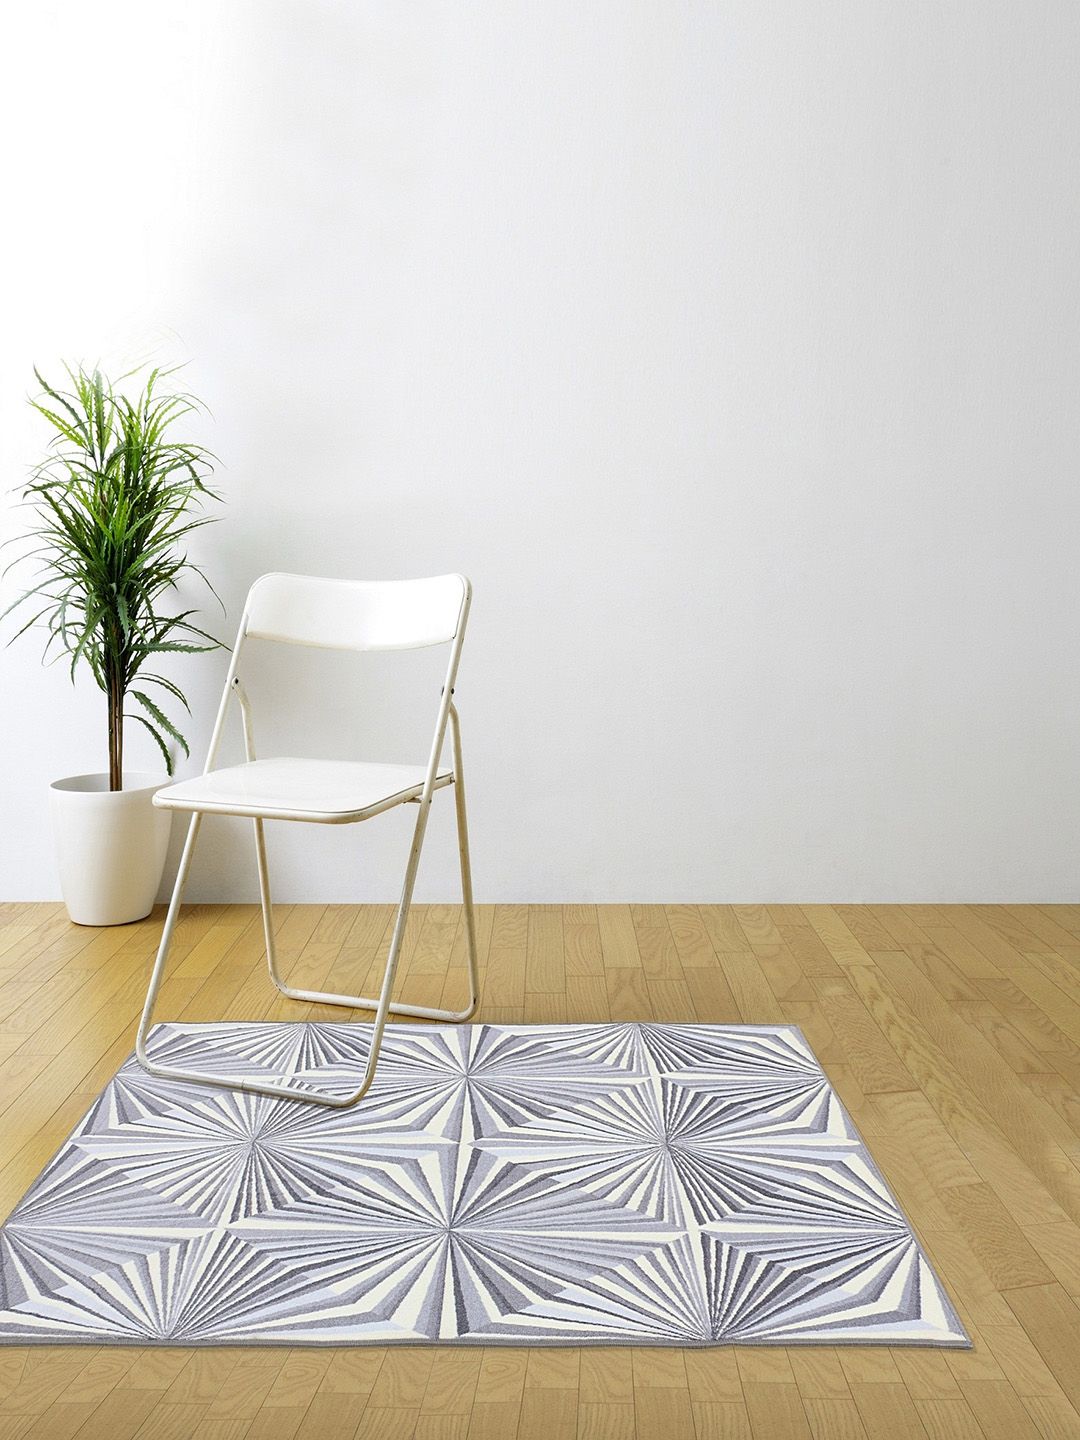 RUGSMITH Grey & Cream-Coloured Geometric Printed Rectangular Anti-Skid Carpet Price in India